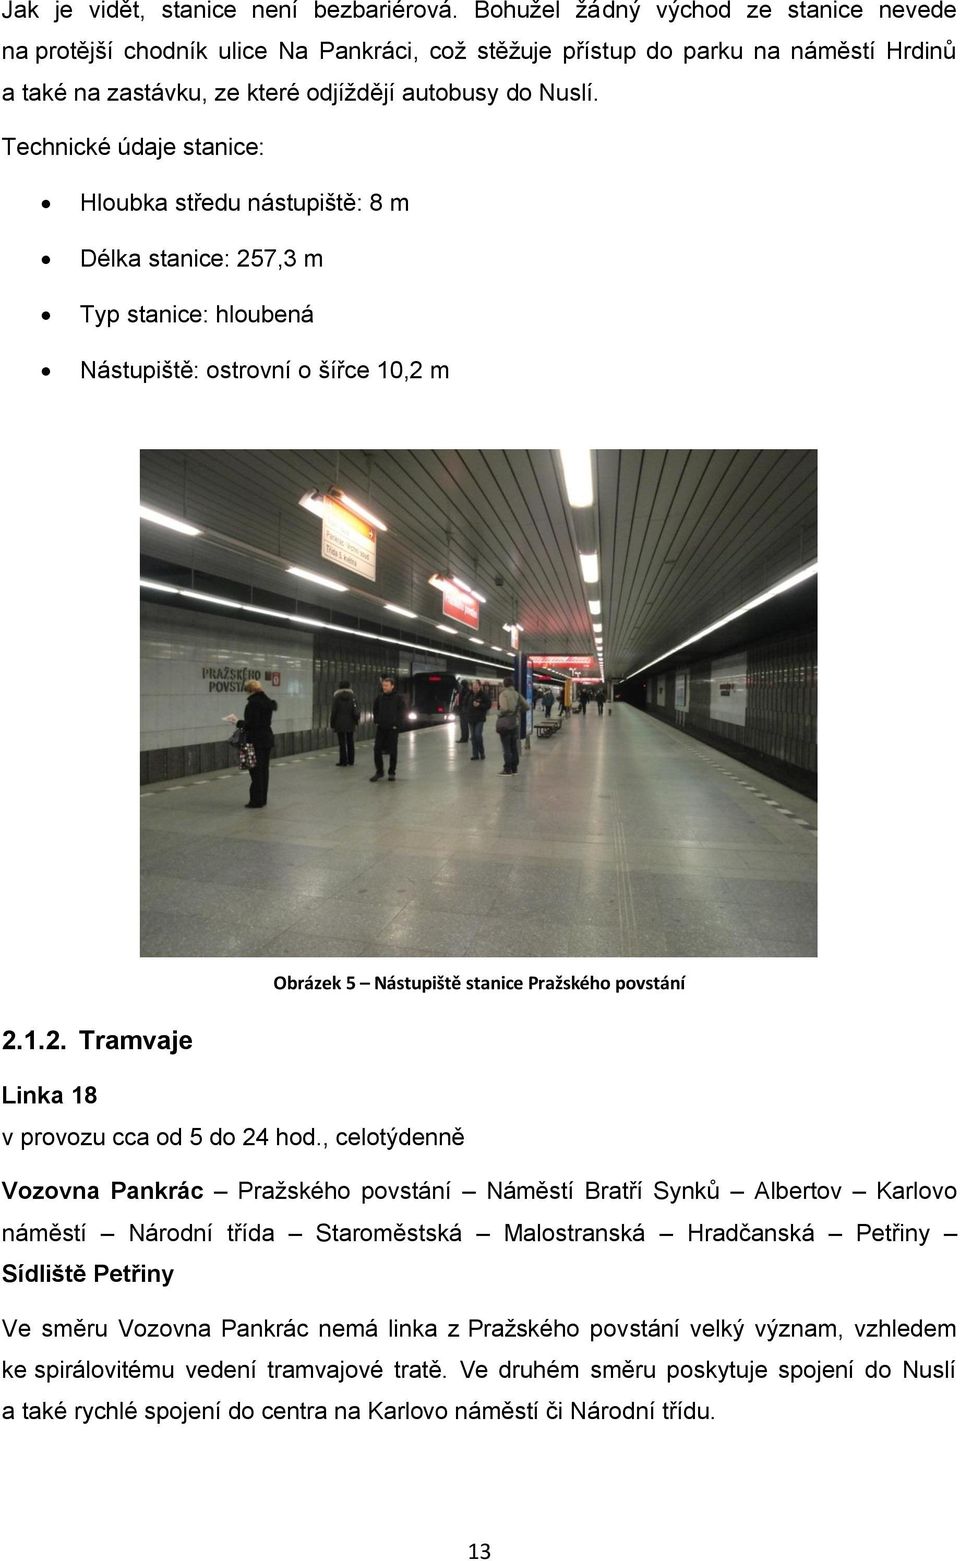 Technické údaje stanice: Hloubka středu nástupiště: 8 m Délka stanice: 257,3 m Typ stanice: hloubená Nástupiště: ostrovní o šířce 10,2 m Obrázek 5 Nástupiště stanice Pražského povstání 2.1.2. Tramvaje Linka 18 v provozu cca od 5 do 24 hod.